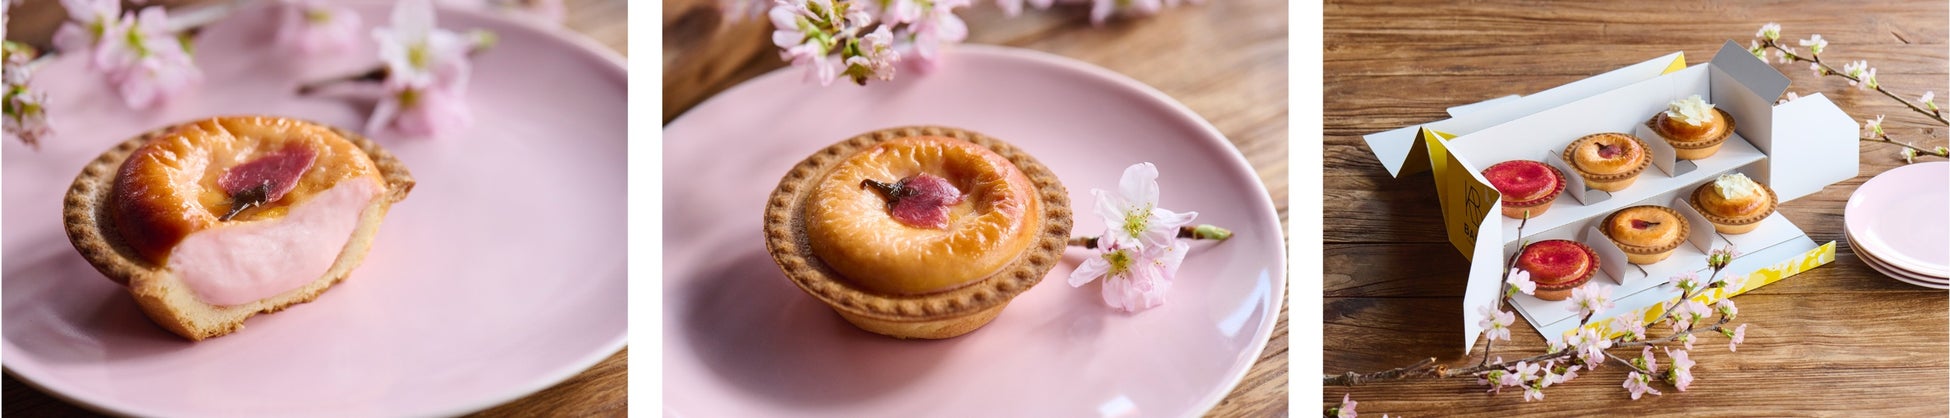 焼きたてチーズタルト専門店「BAKE CHEESE TART」から、お花見にピッタリの春の新商品が登場！ピンク色の可愛らしい桜花を添えた「焼きたてチーズタルト さくら」！